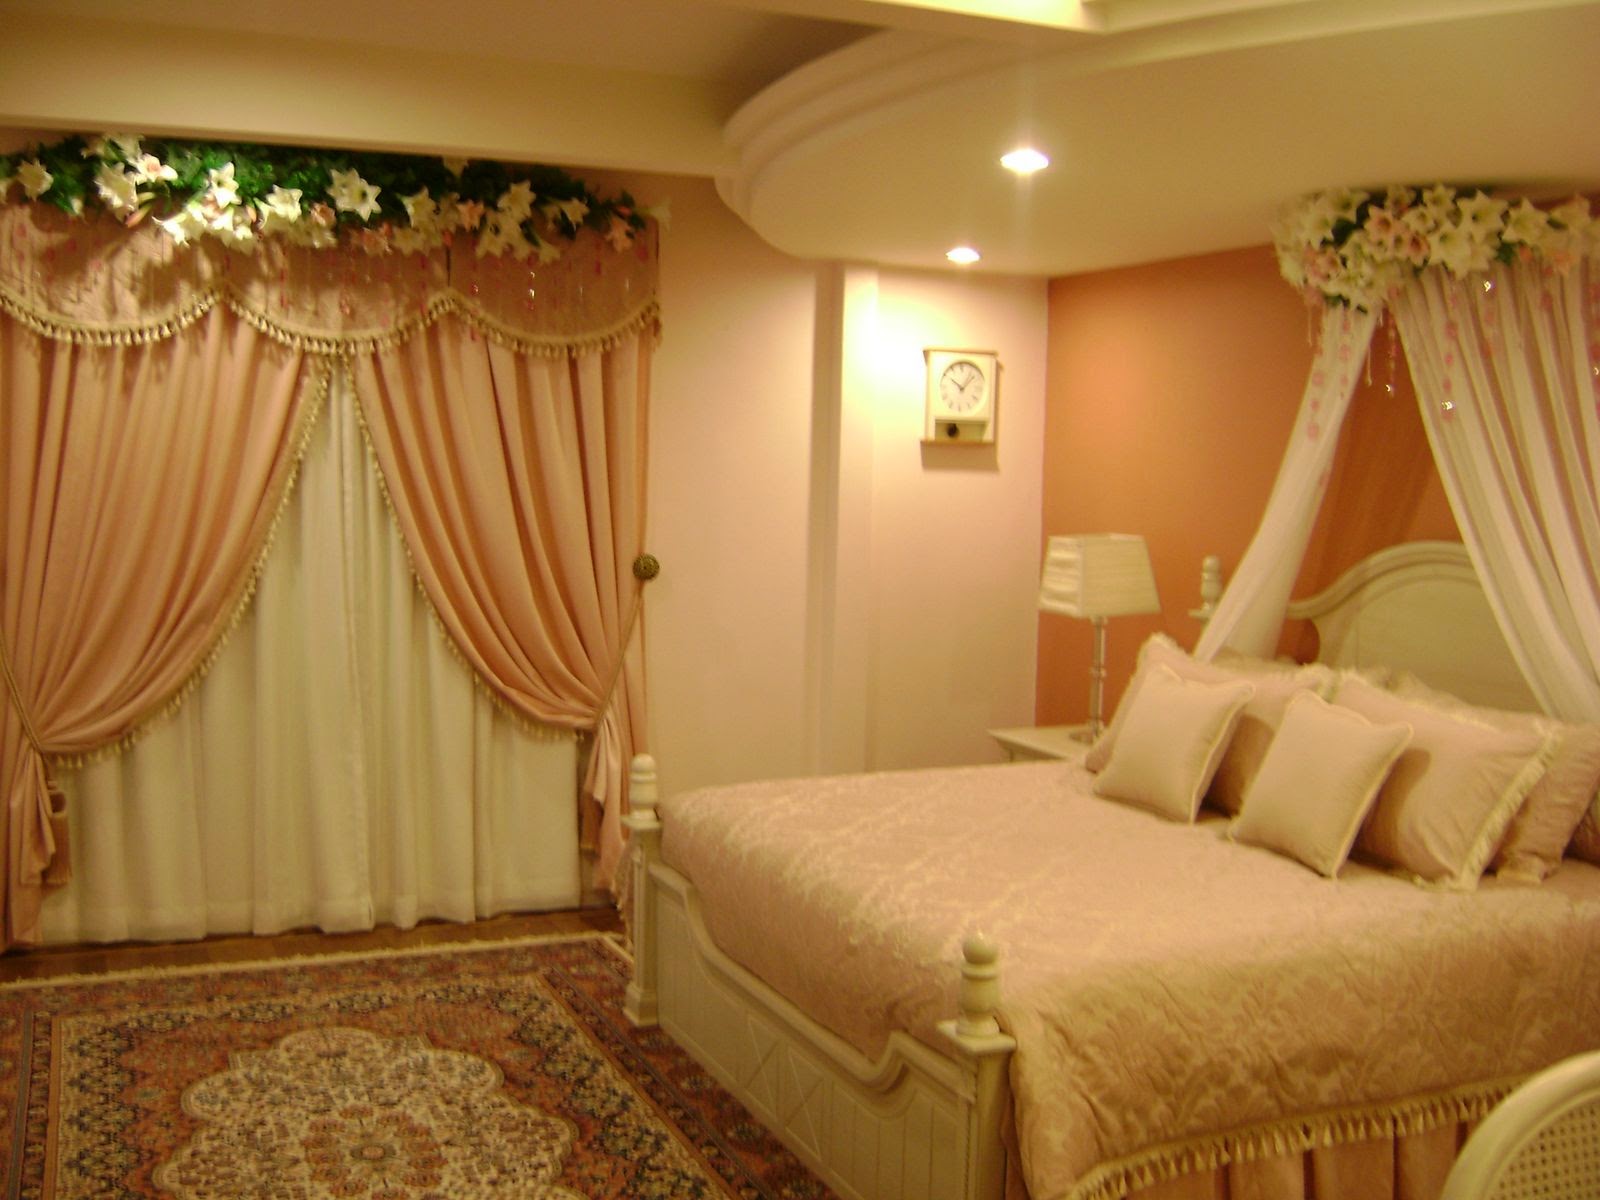 Romantic Bedroom Scenes - Bride And Groom Room Decorations , HD Wallpaper & Backgrounds